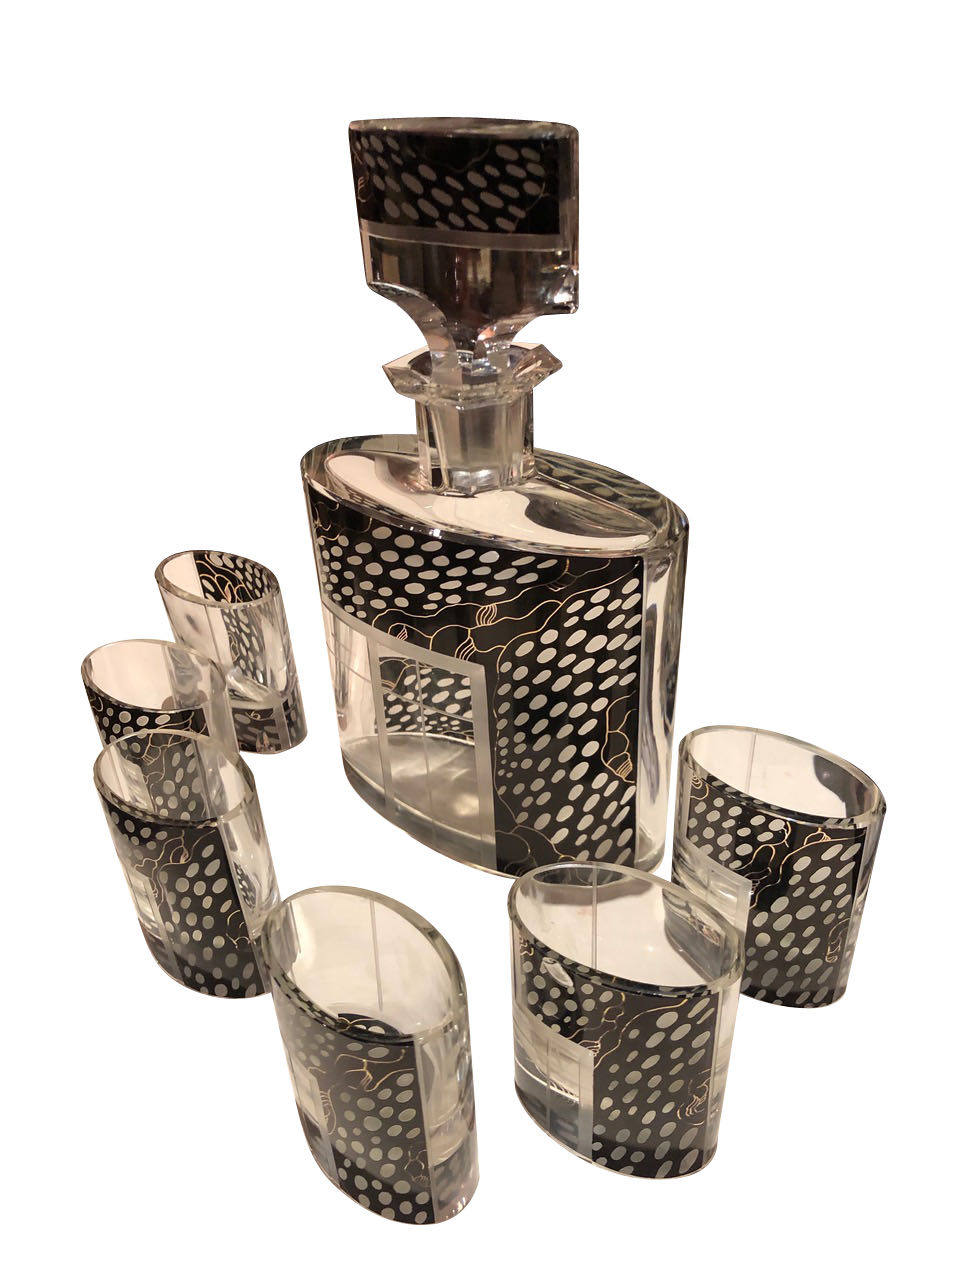 Art Deco Czech Decanter Glasses with Leopard Black Designs